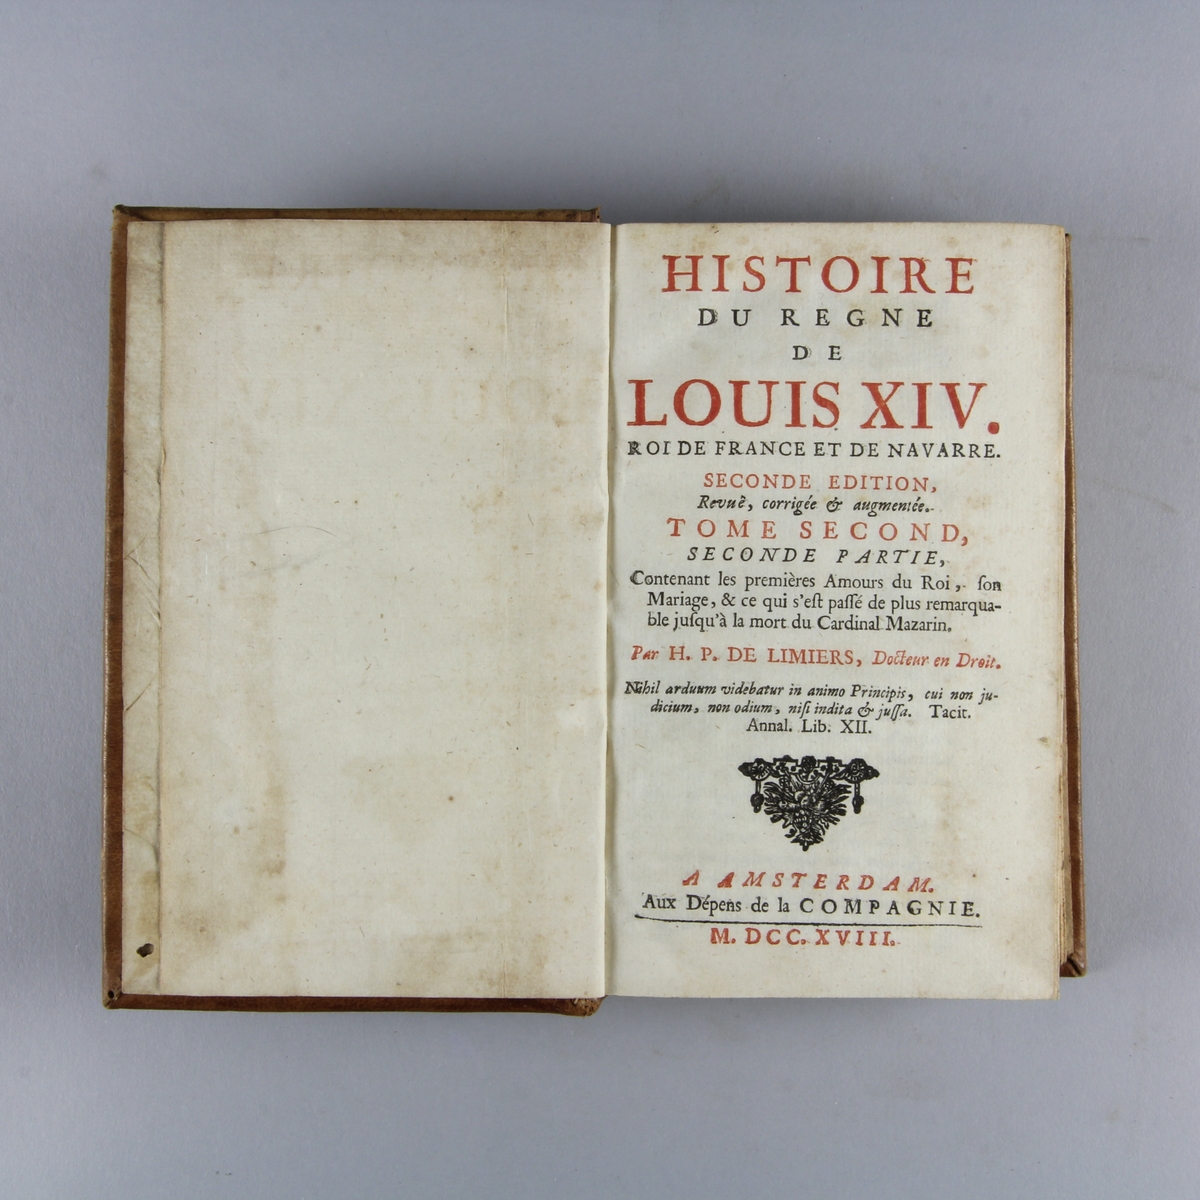 Bok, helfranskt band "Histoire du regne de Louis XIV" del 2:2. Skinnband med guldpräglad rygg i fem upphöjda bind, skuret rödstänkt snitt.